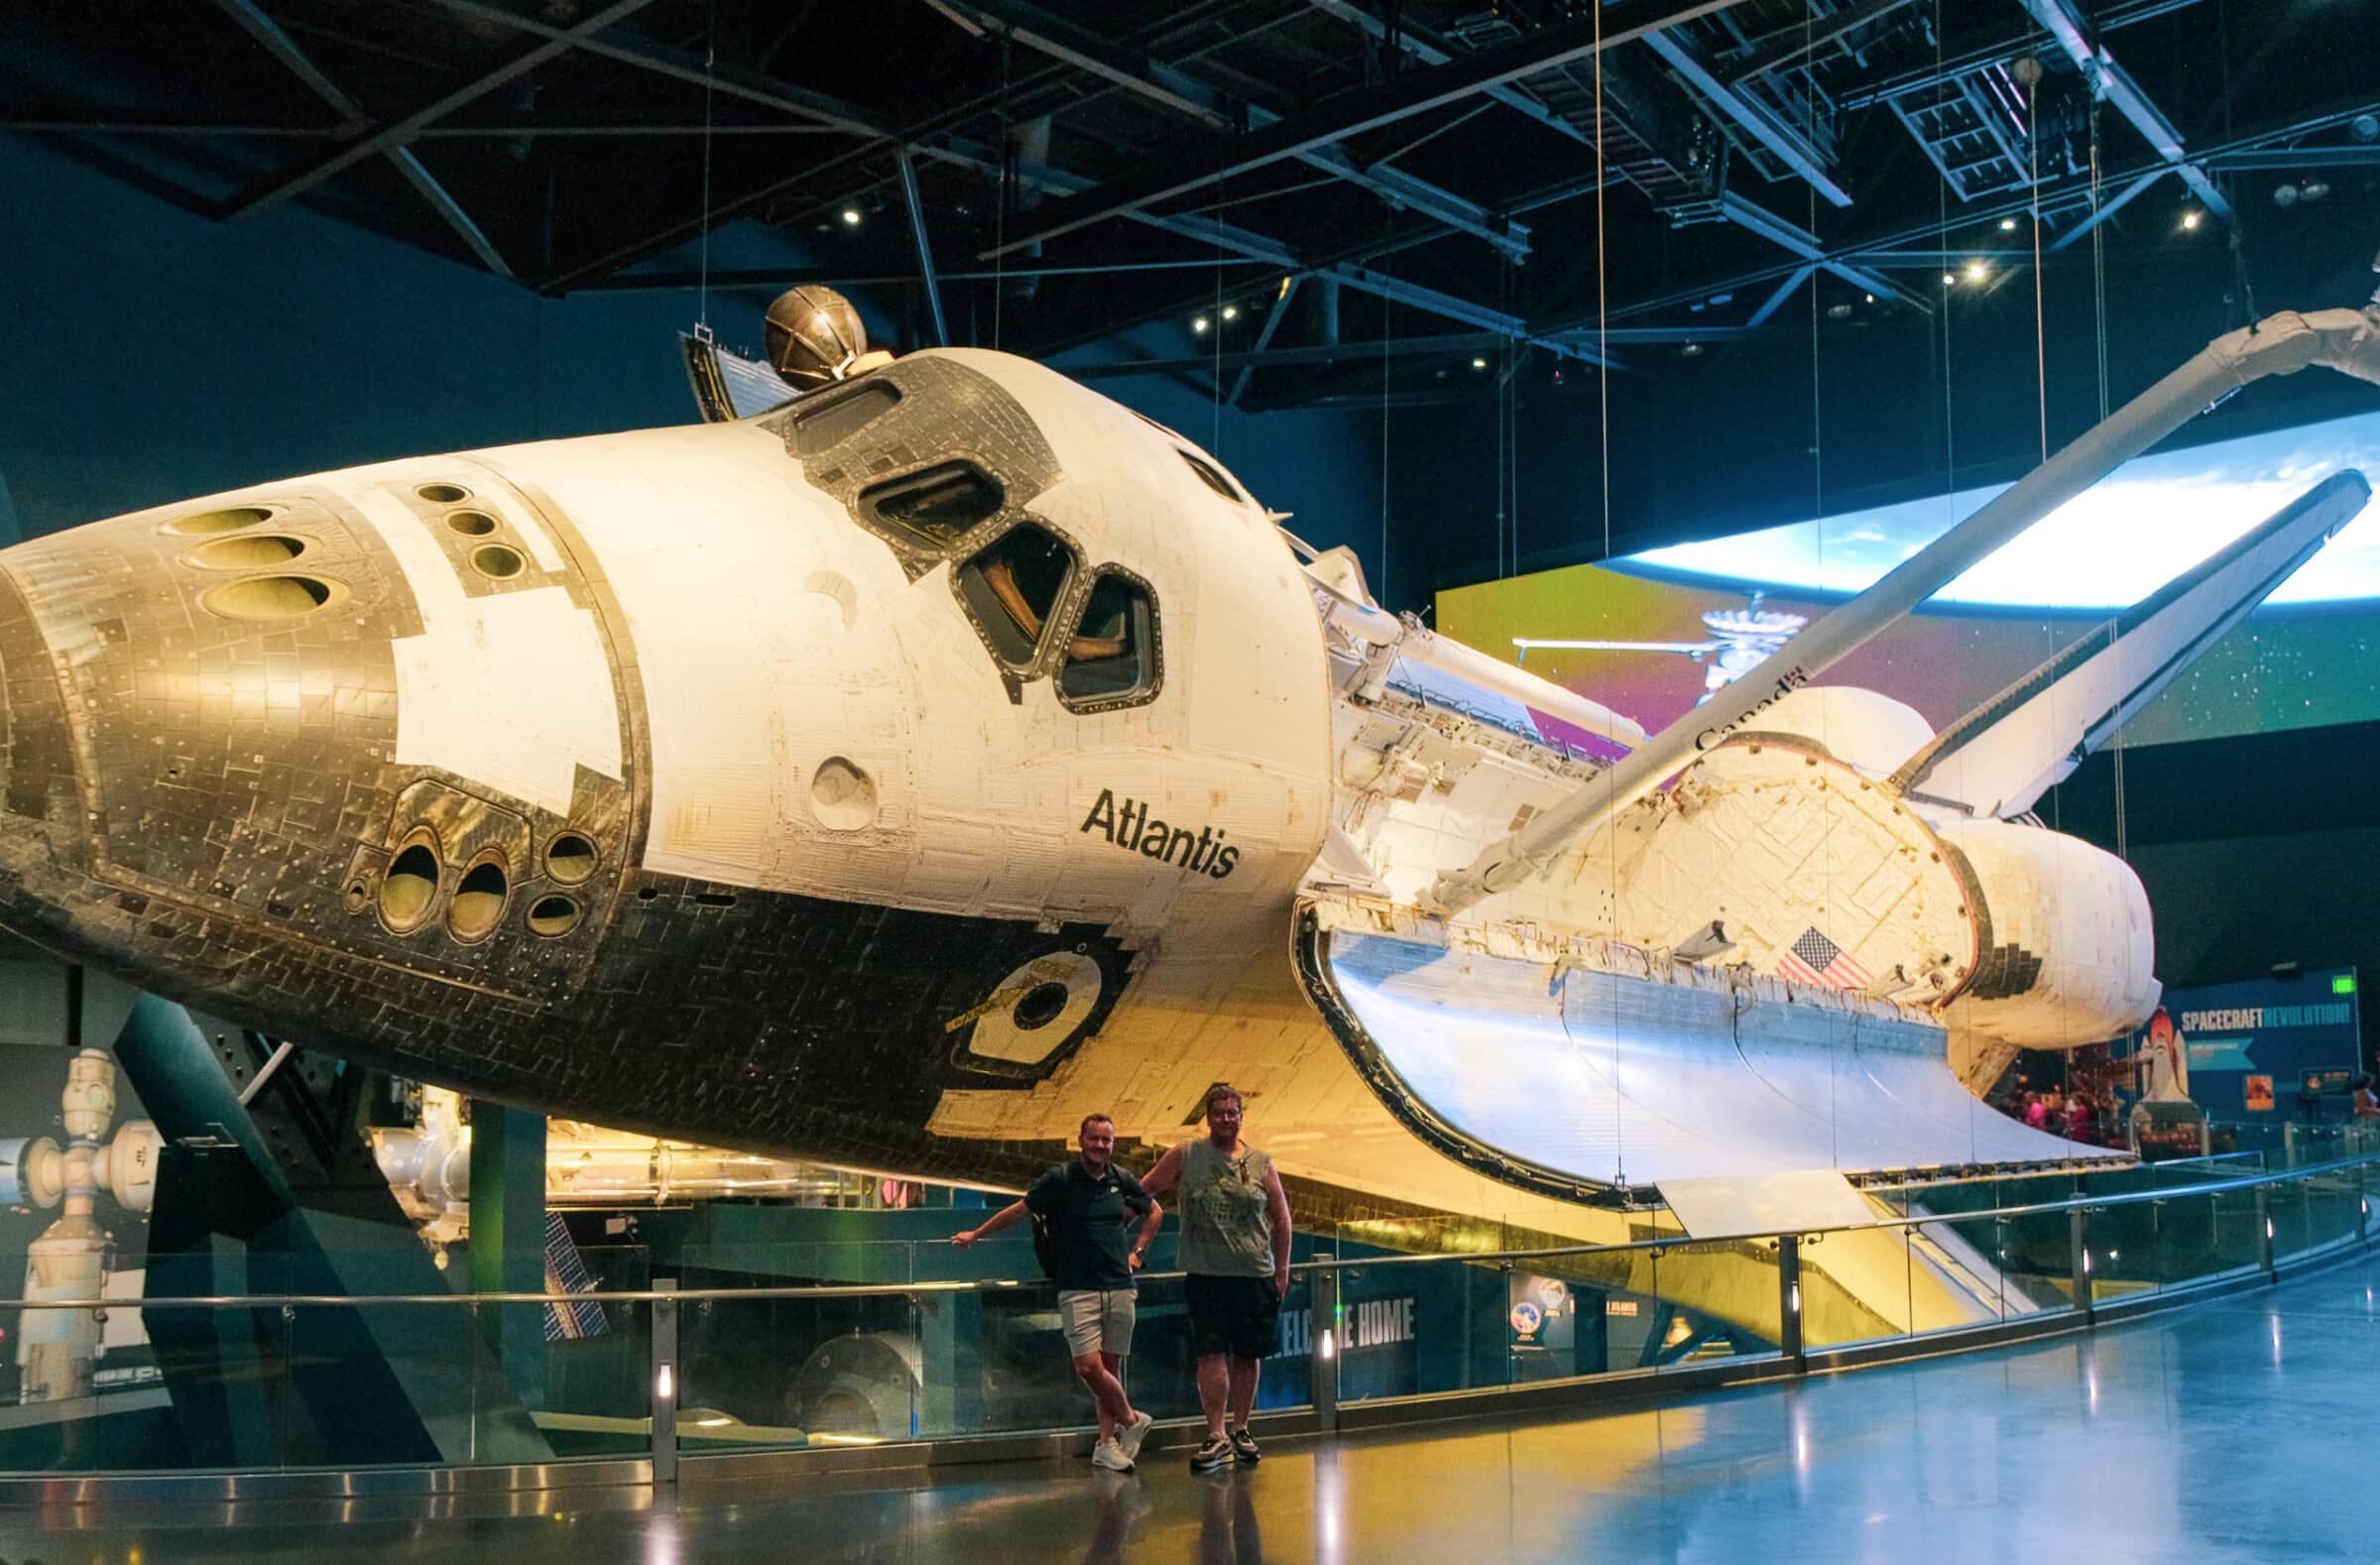 De Space Shuttle: Atlantis | Kennedy Space Center